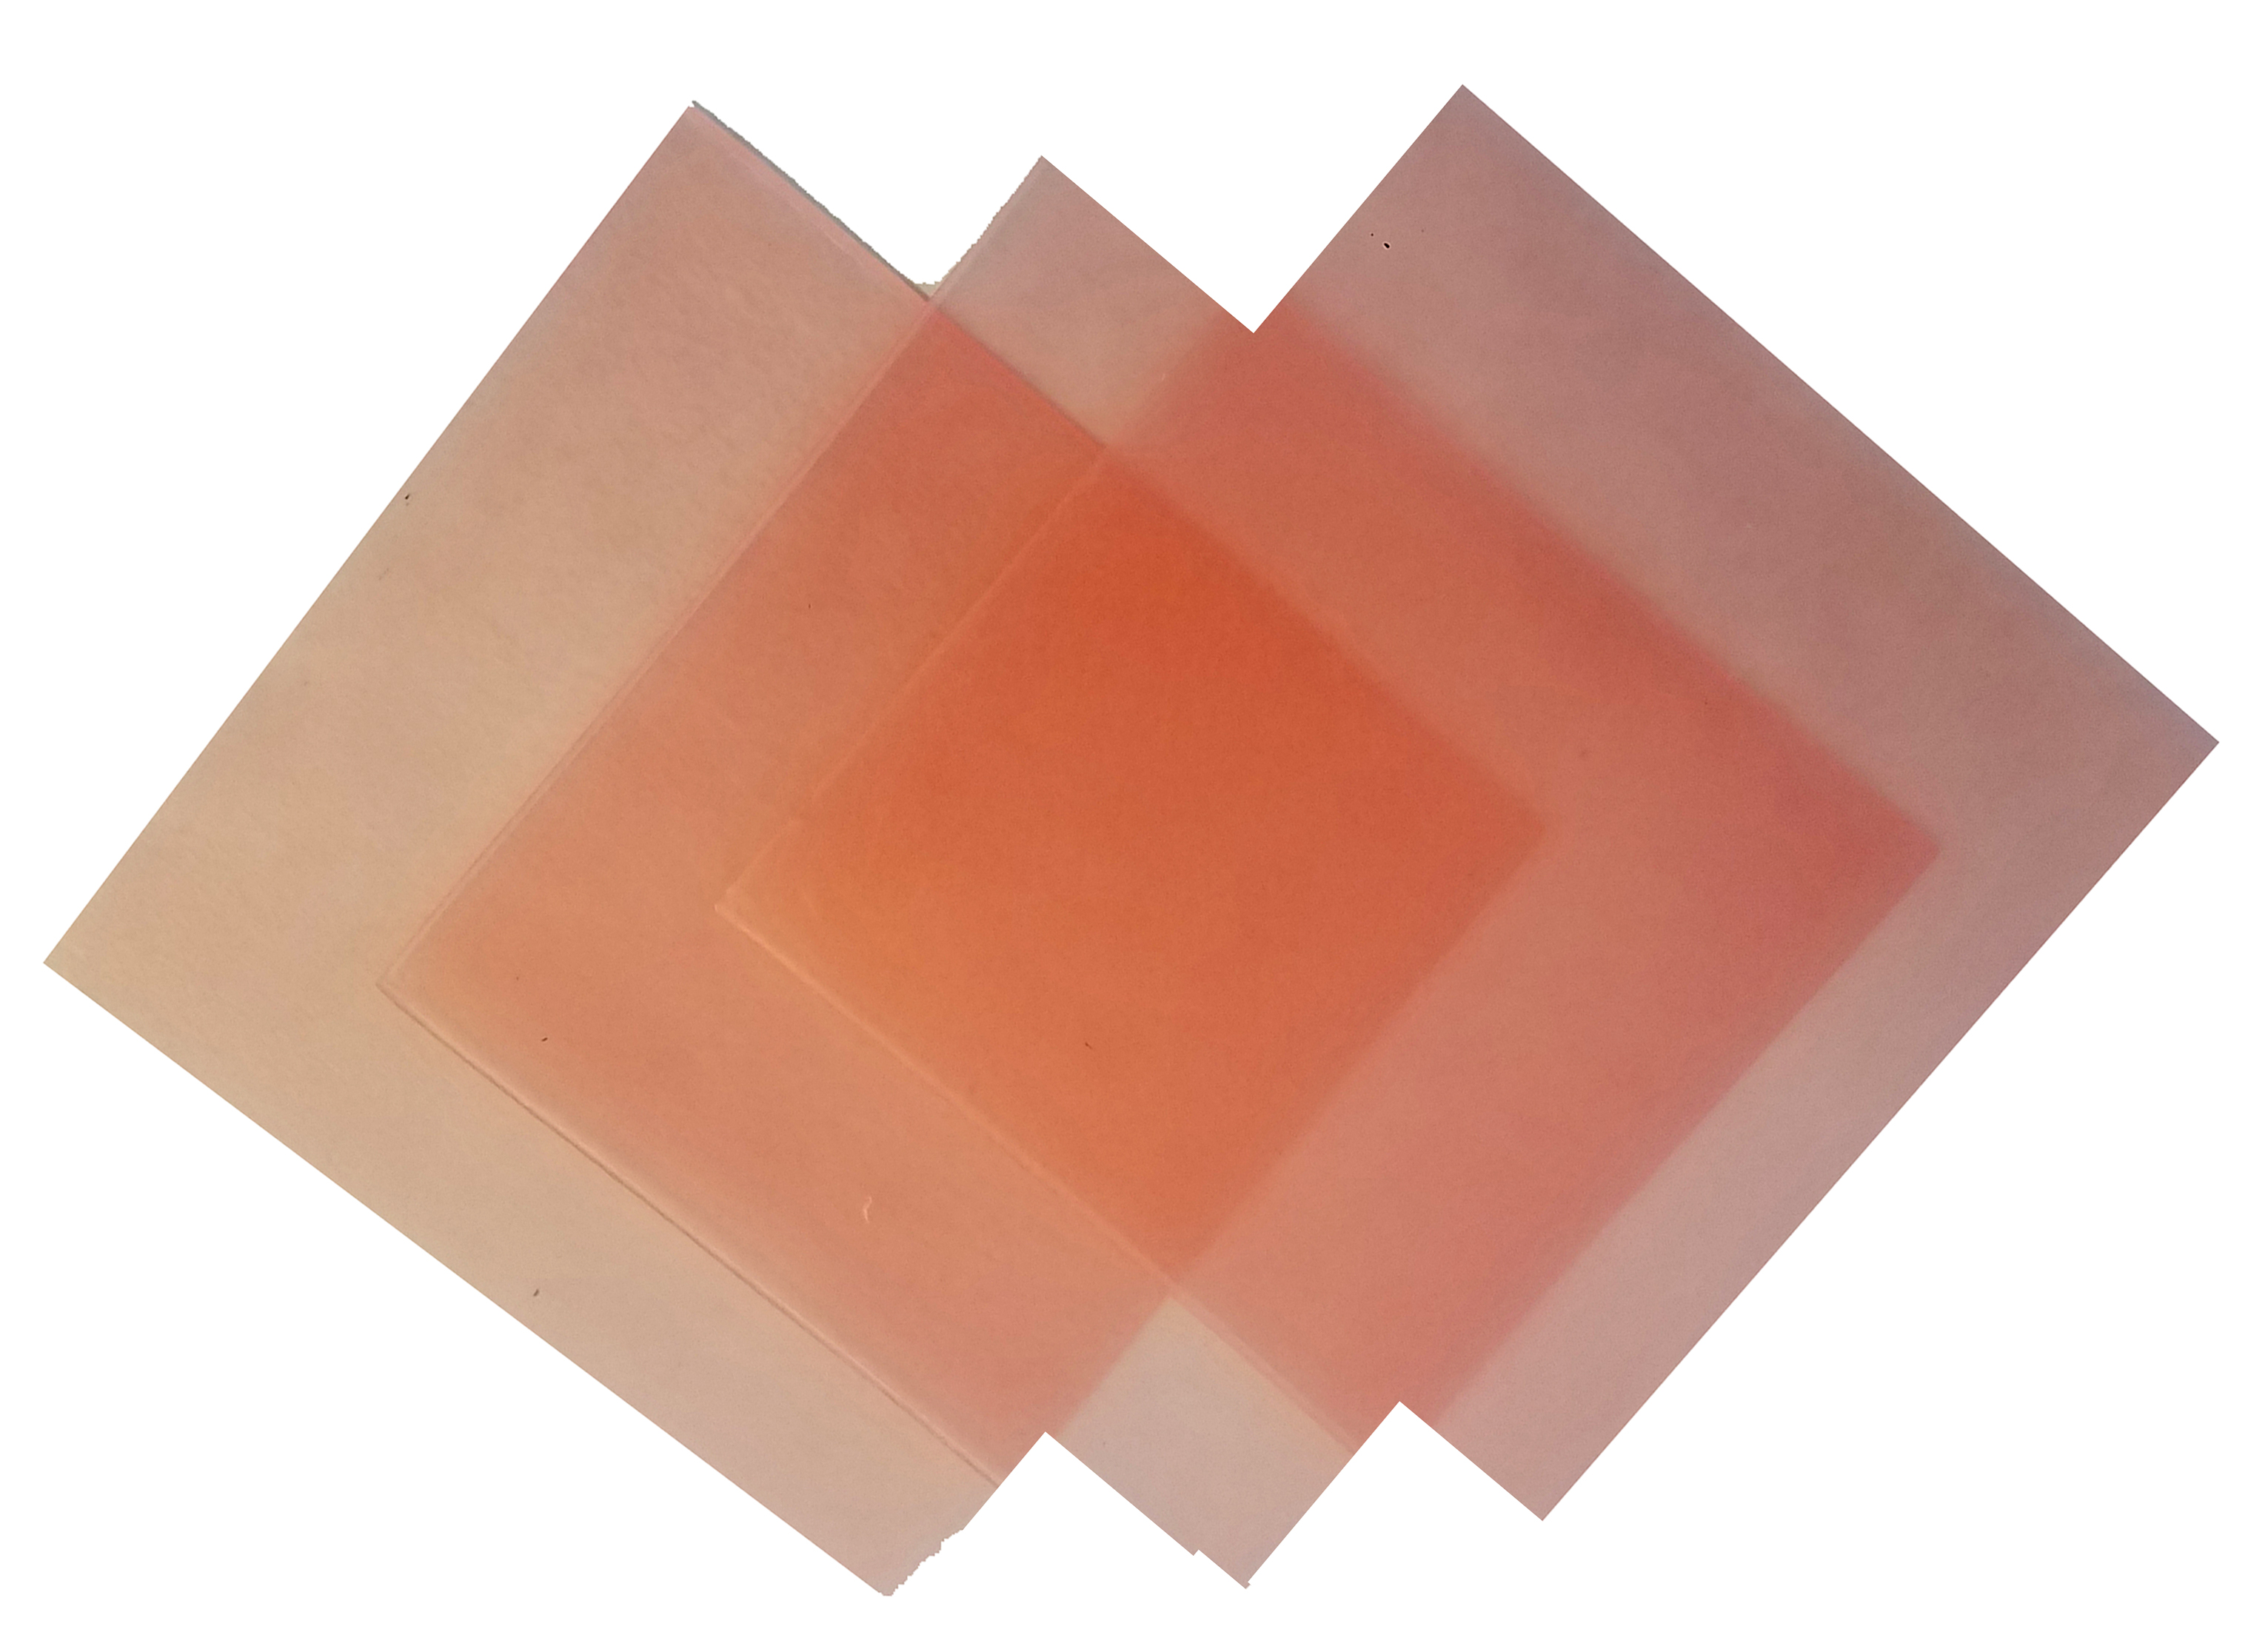 4\"x4\" sheet wax 28 gauge pink